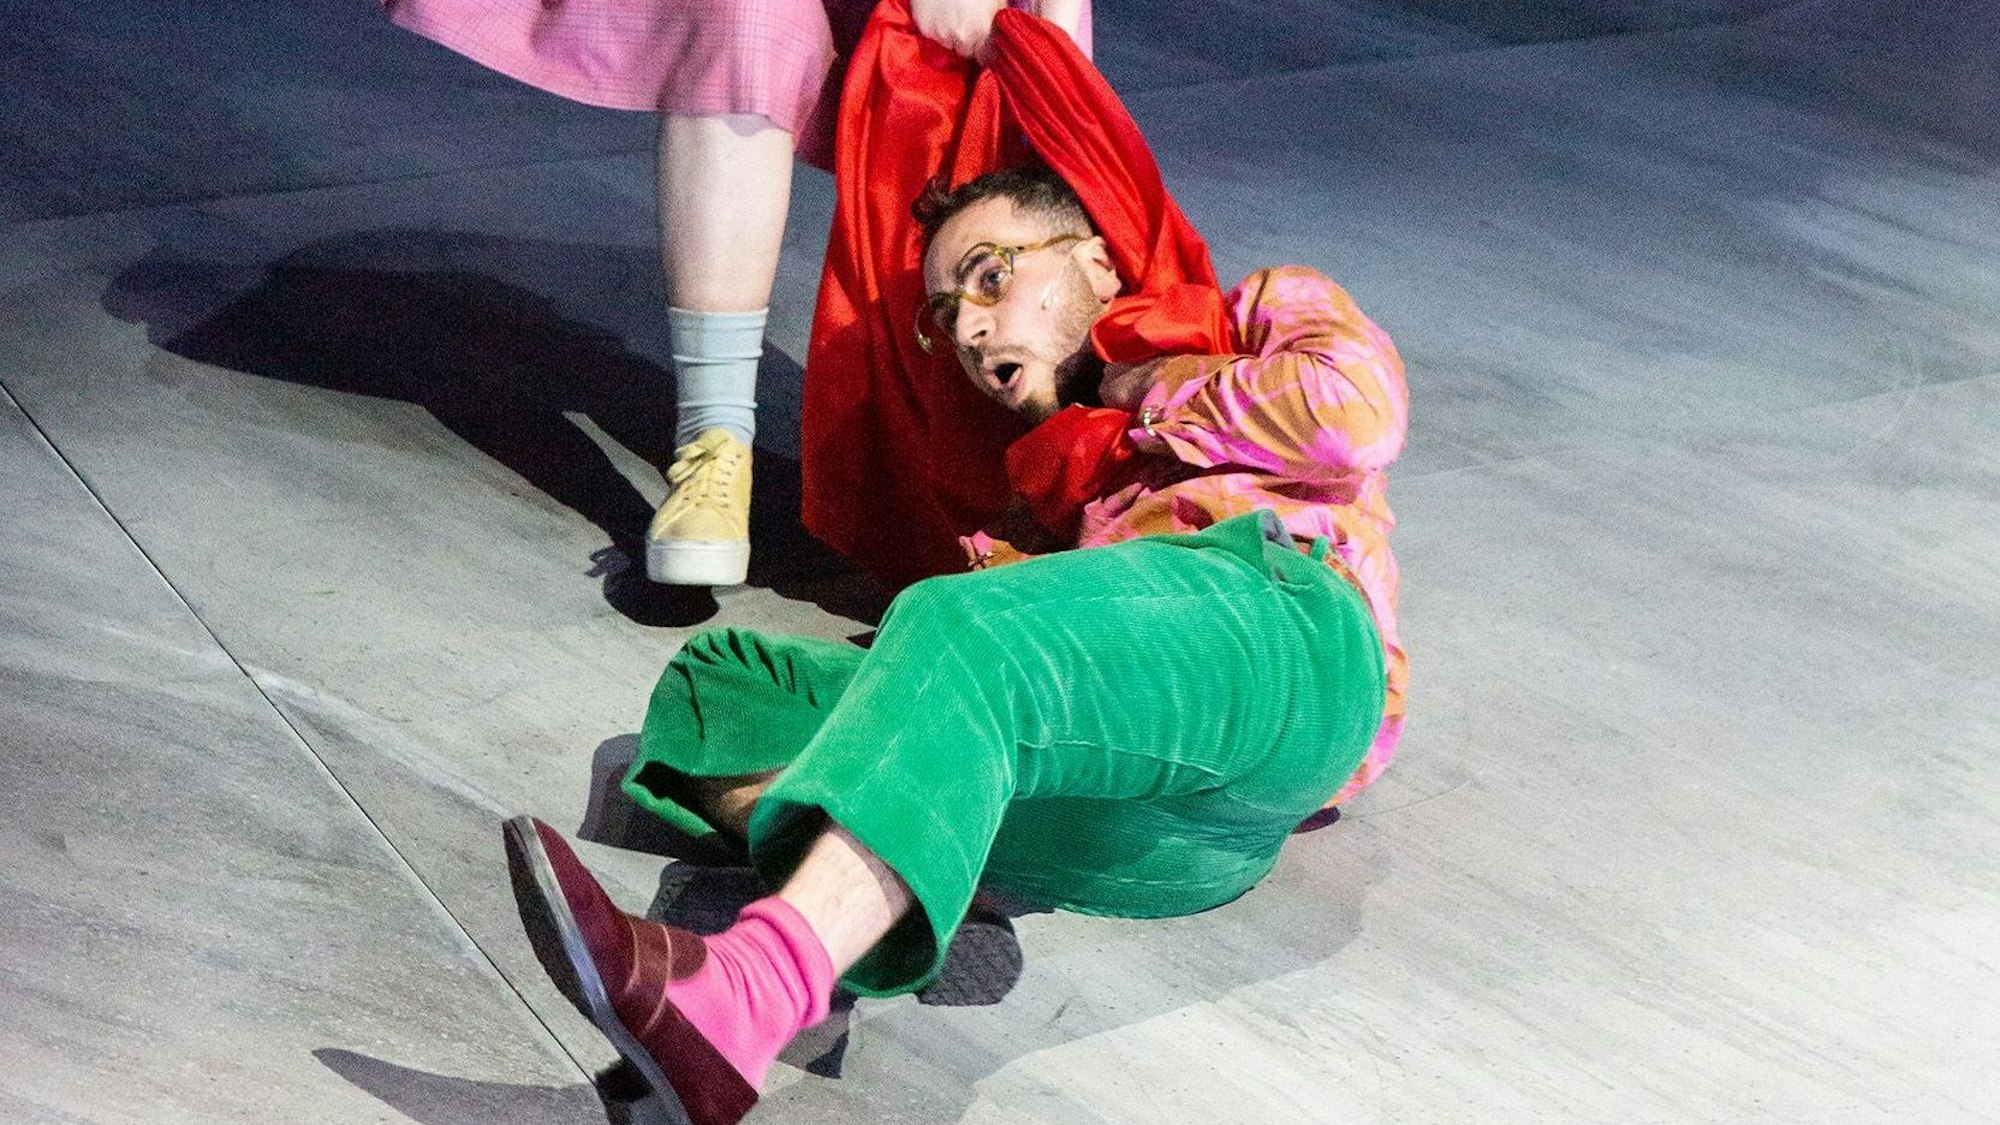 Szene Helges Leben am Schauspiel Köln, ein Mann am Boden wird an seinem roten Schal über die Bühne gezerrt.